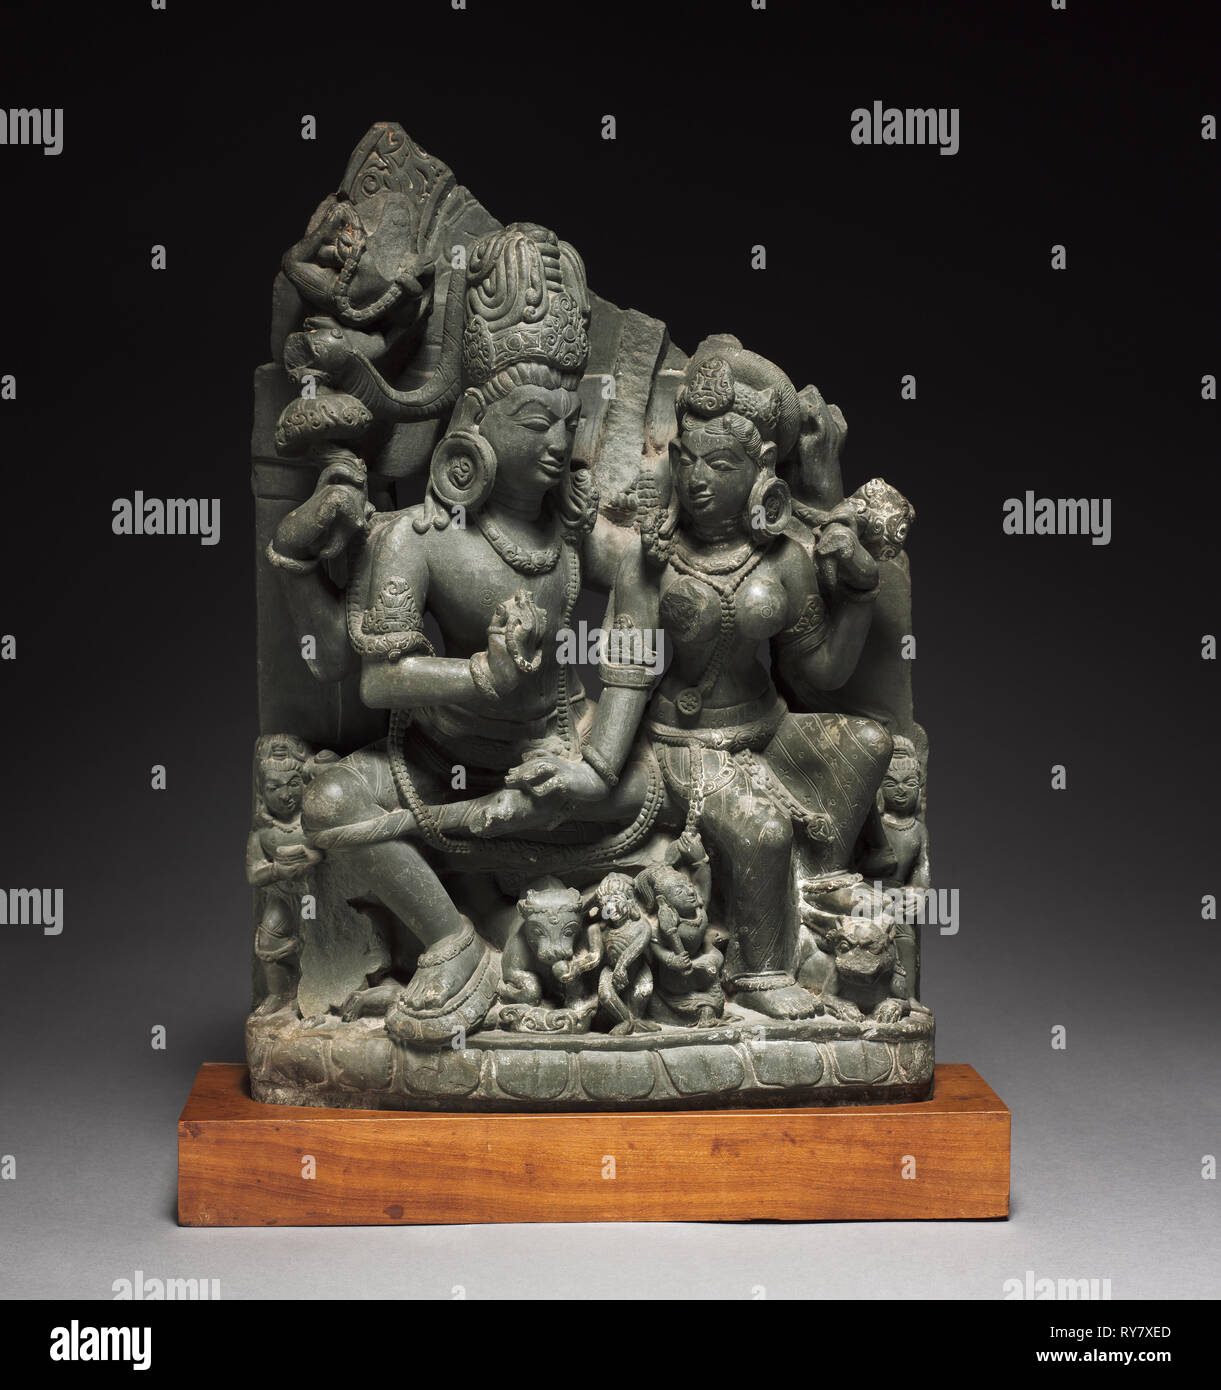 Siva e Parvati (Uma-Mahesvara), 900s. India del nord, Uttaranchal, Almoral, decimo secolo. Verdastro-grigio scisto; complessivo: 48 x 34 x 14,5 cm (18 7/8 x 13 3/8 x 5 11/16 in Foto Stock